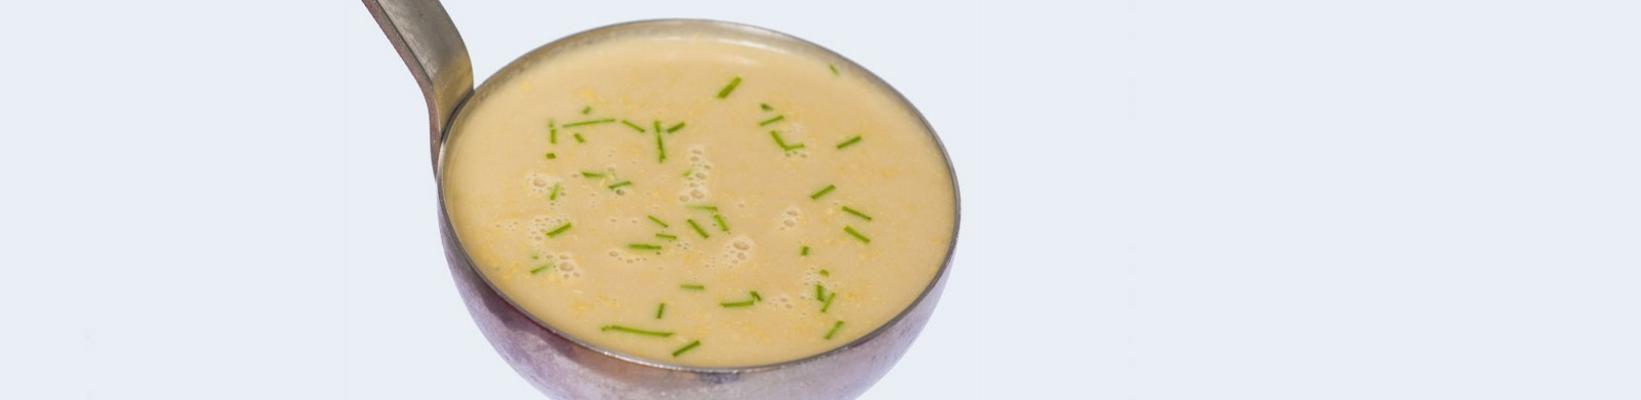 cauliflower soup with apple juice from wendy dekker